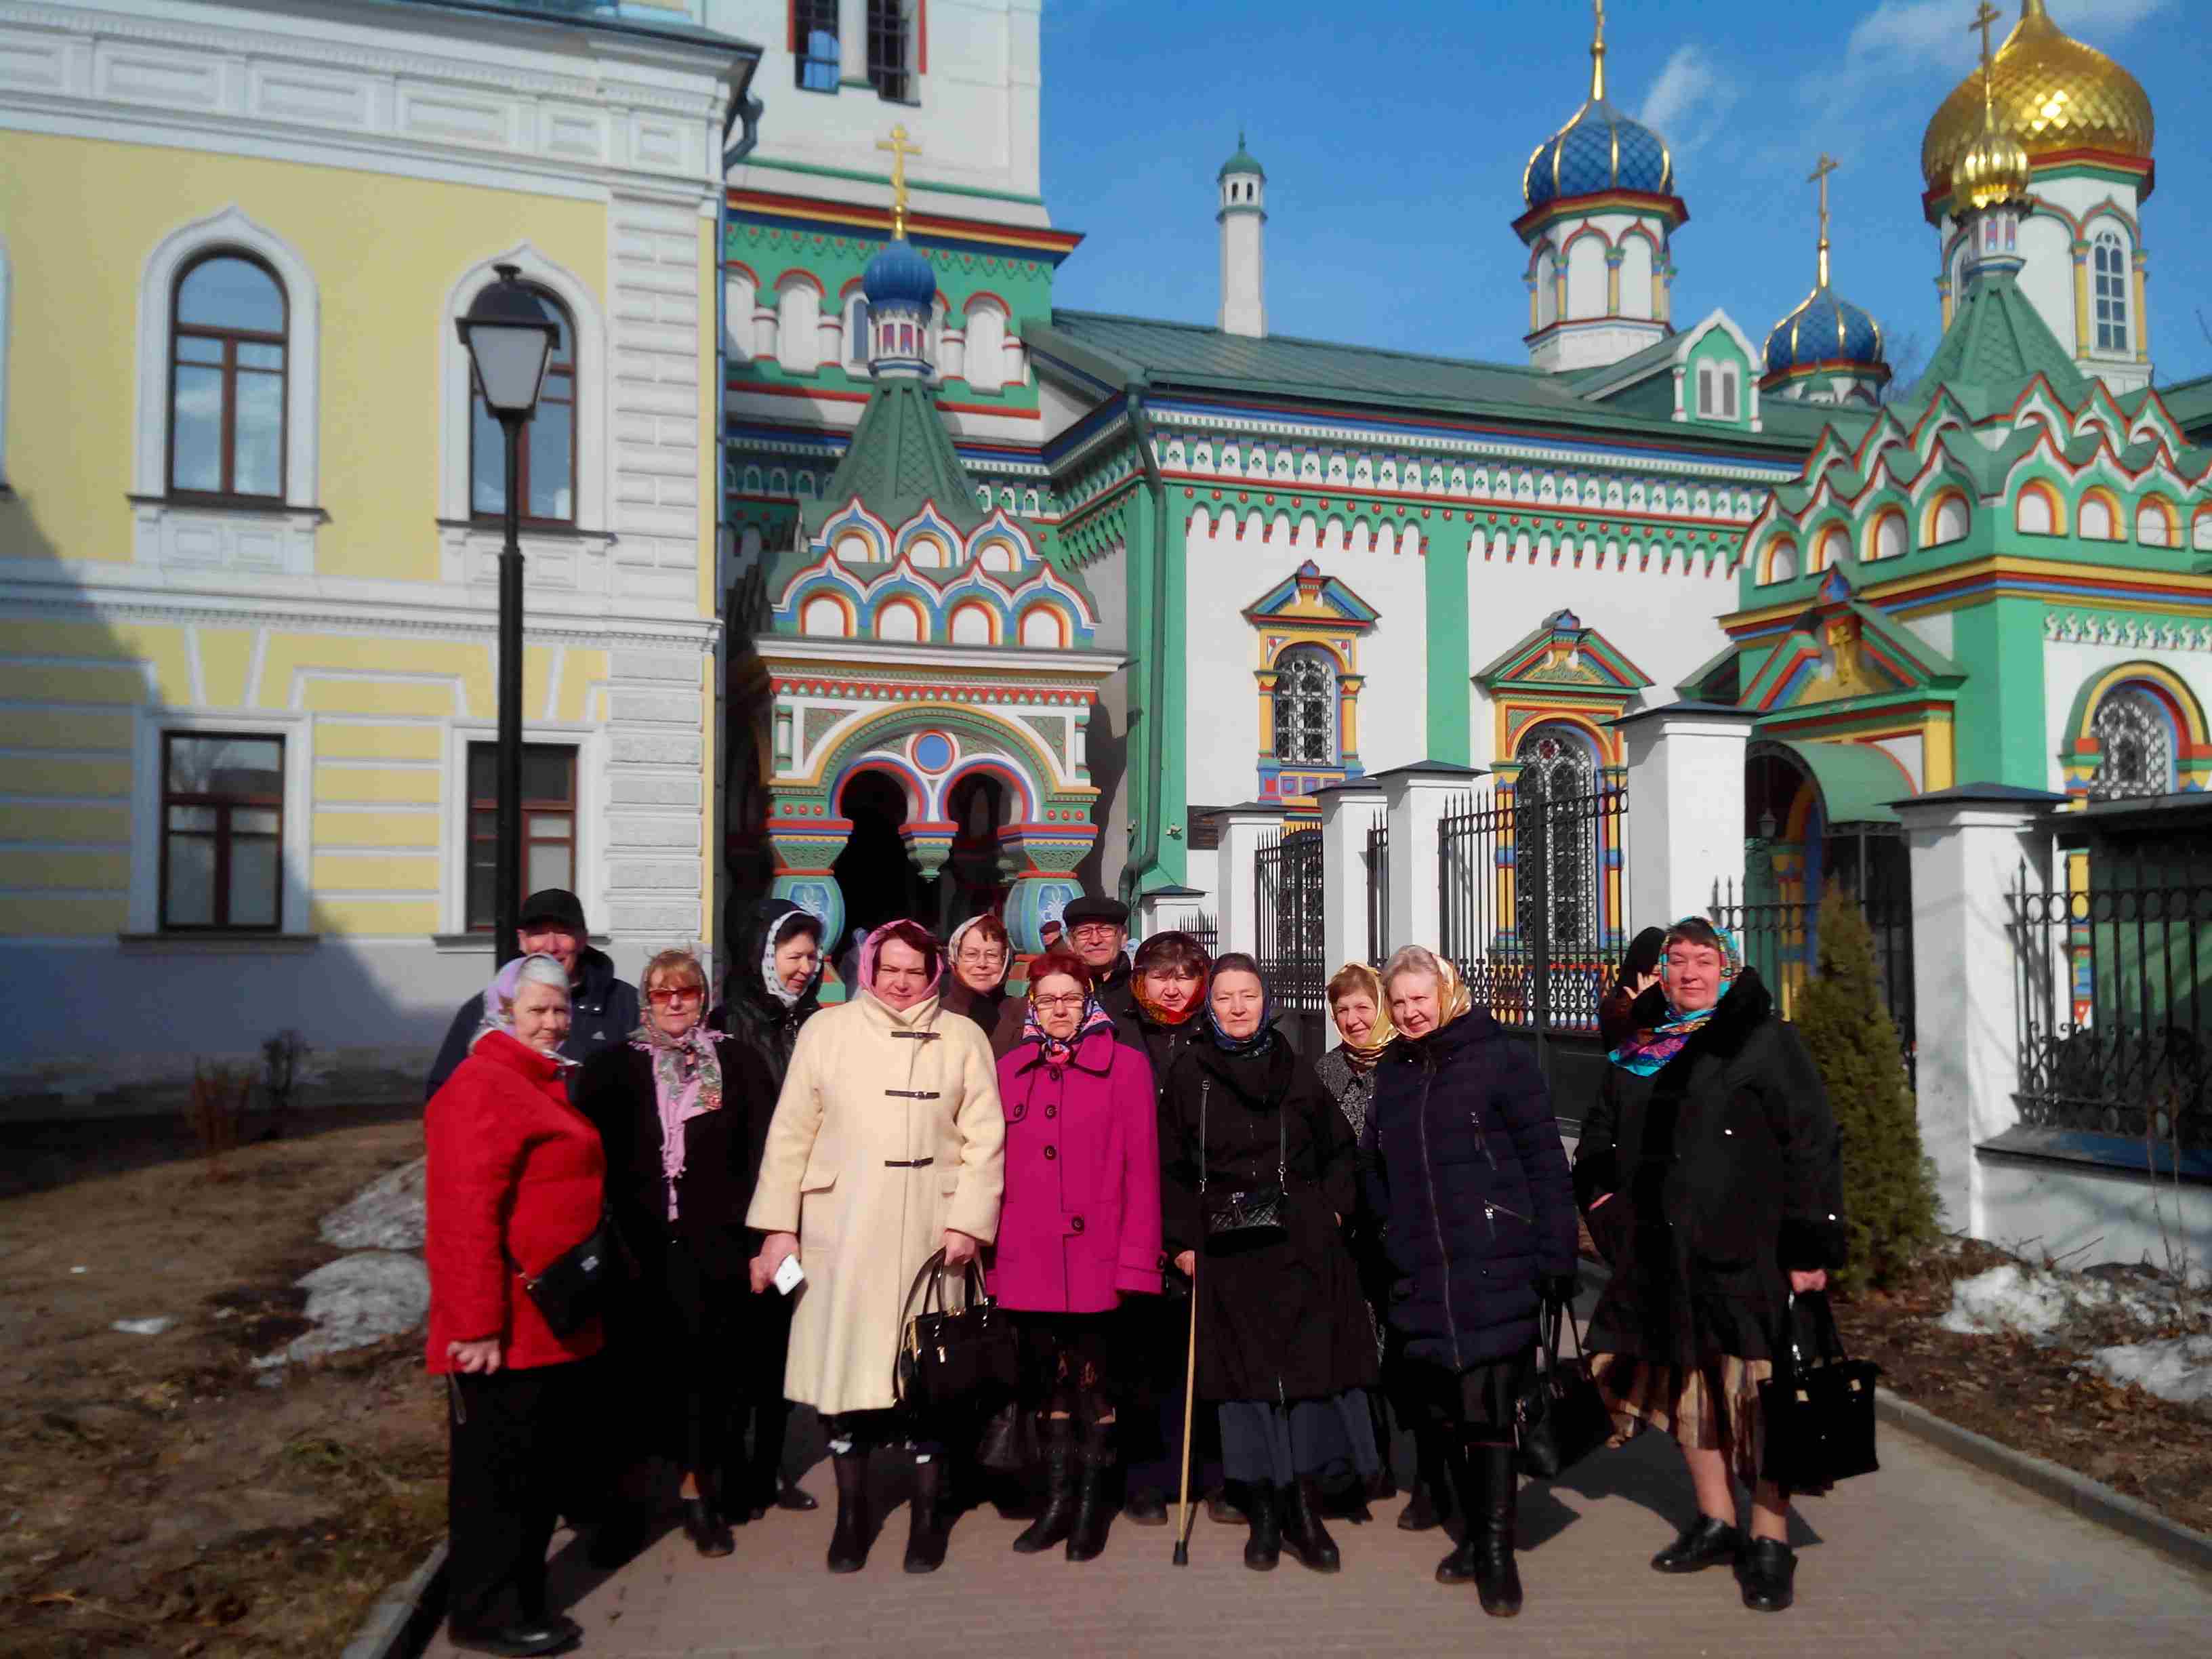 15 марта 2017г. члены МРО «Кузьминки» МГО ВОИ были на экскурсии «История старообрядчества в России».